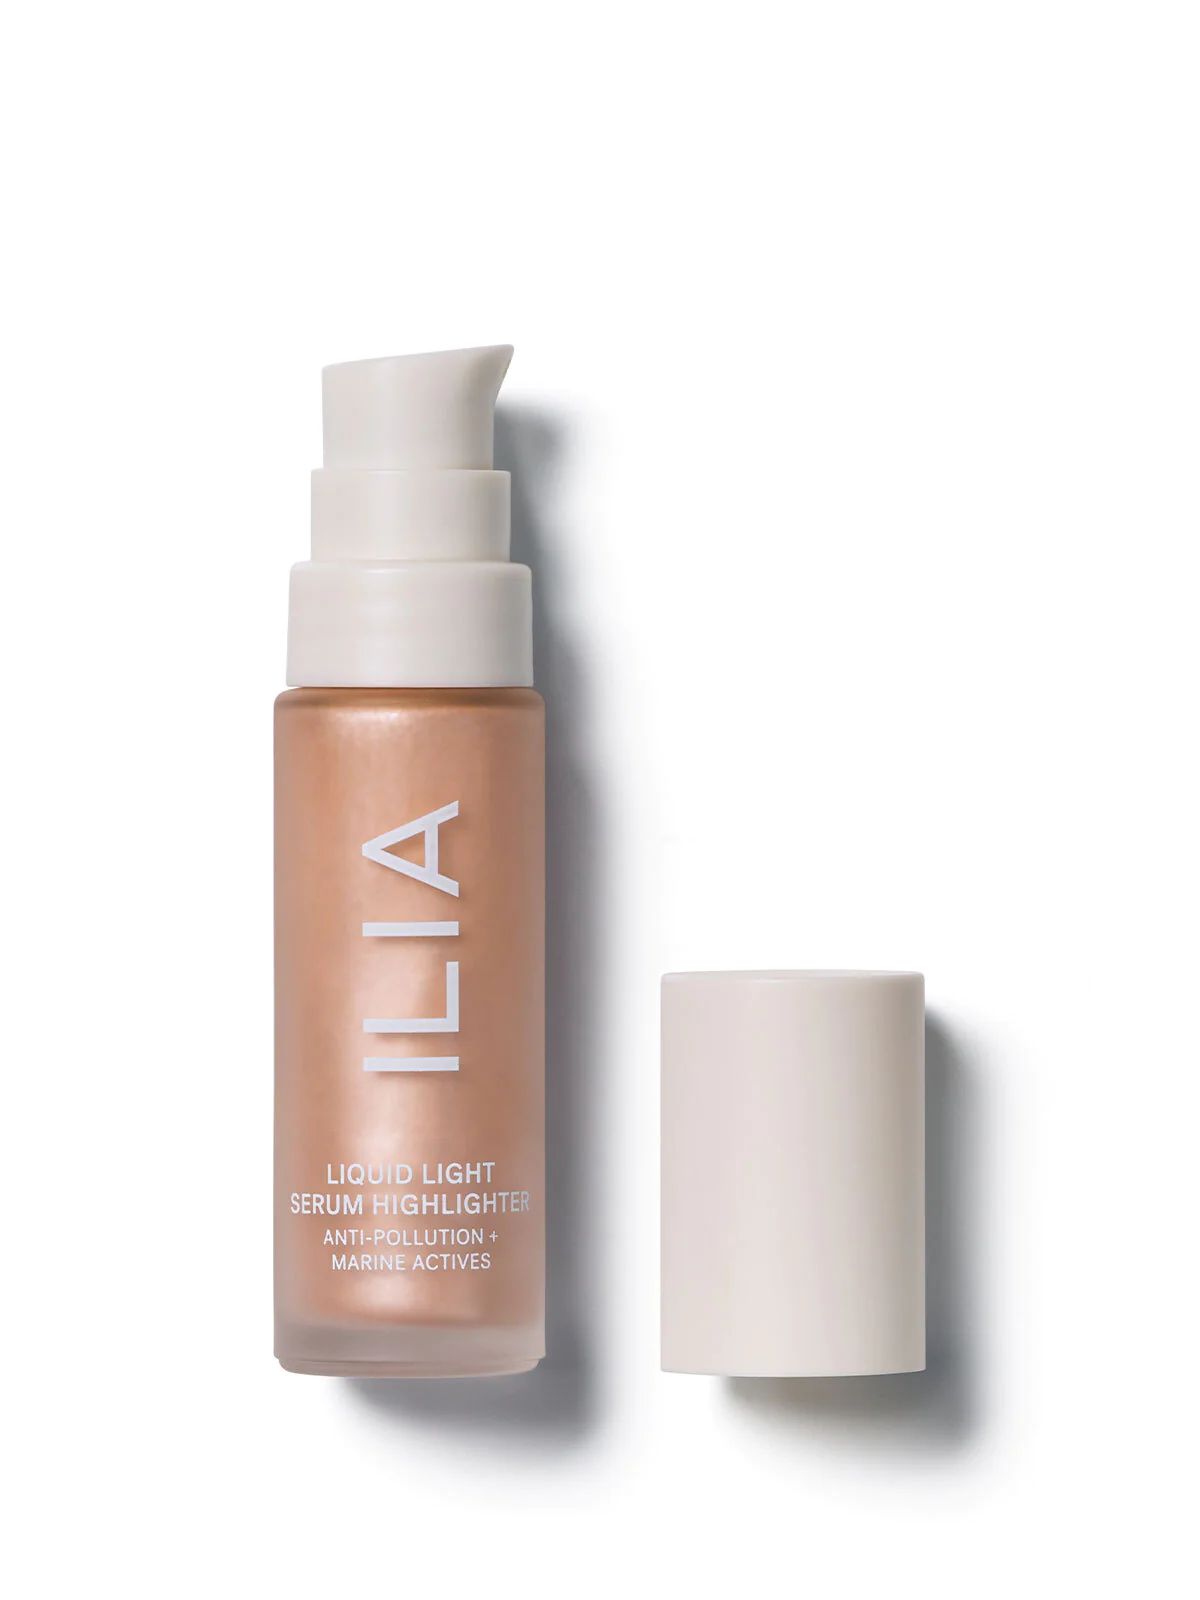 ILIA Liquid Light Serum Highlighter - Astrid | ILIA Beauty | ILIA Beauty